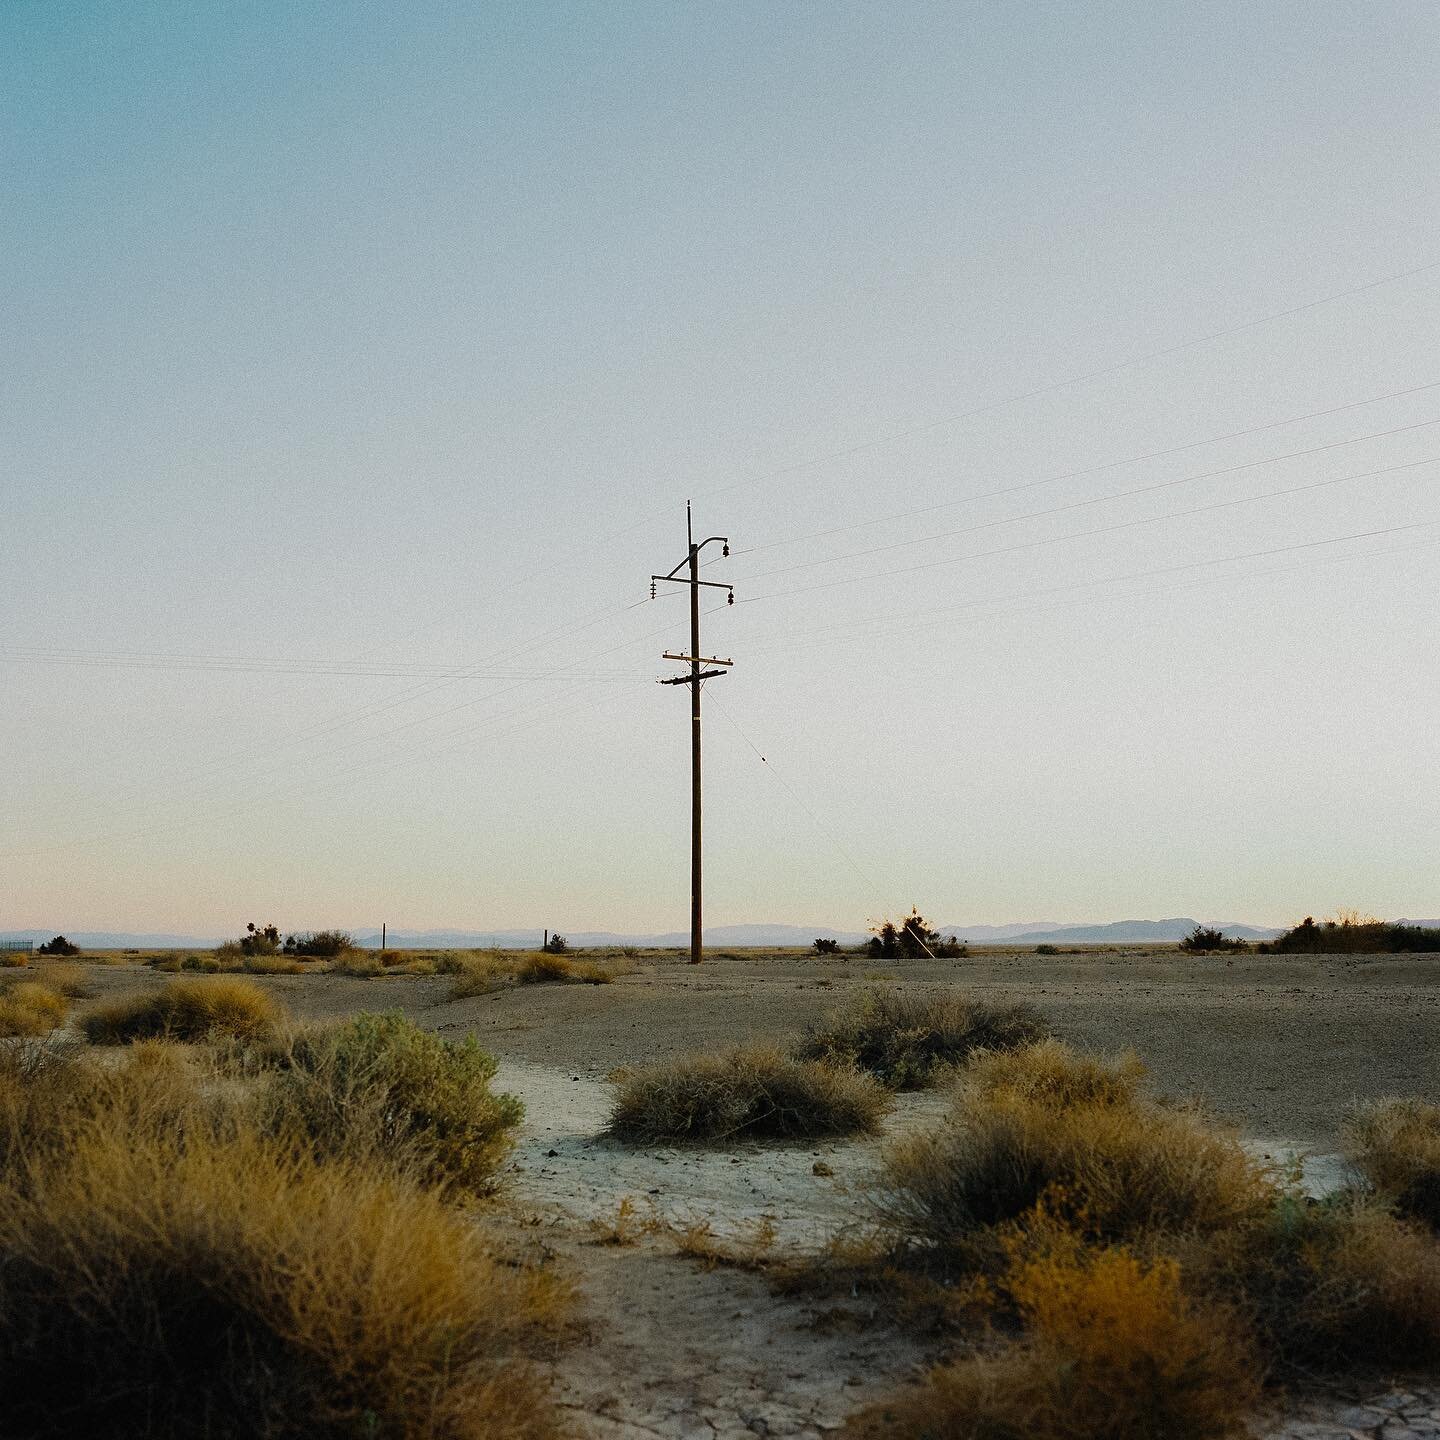 Desert poles #hasselblad500cm #120film